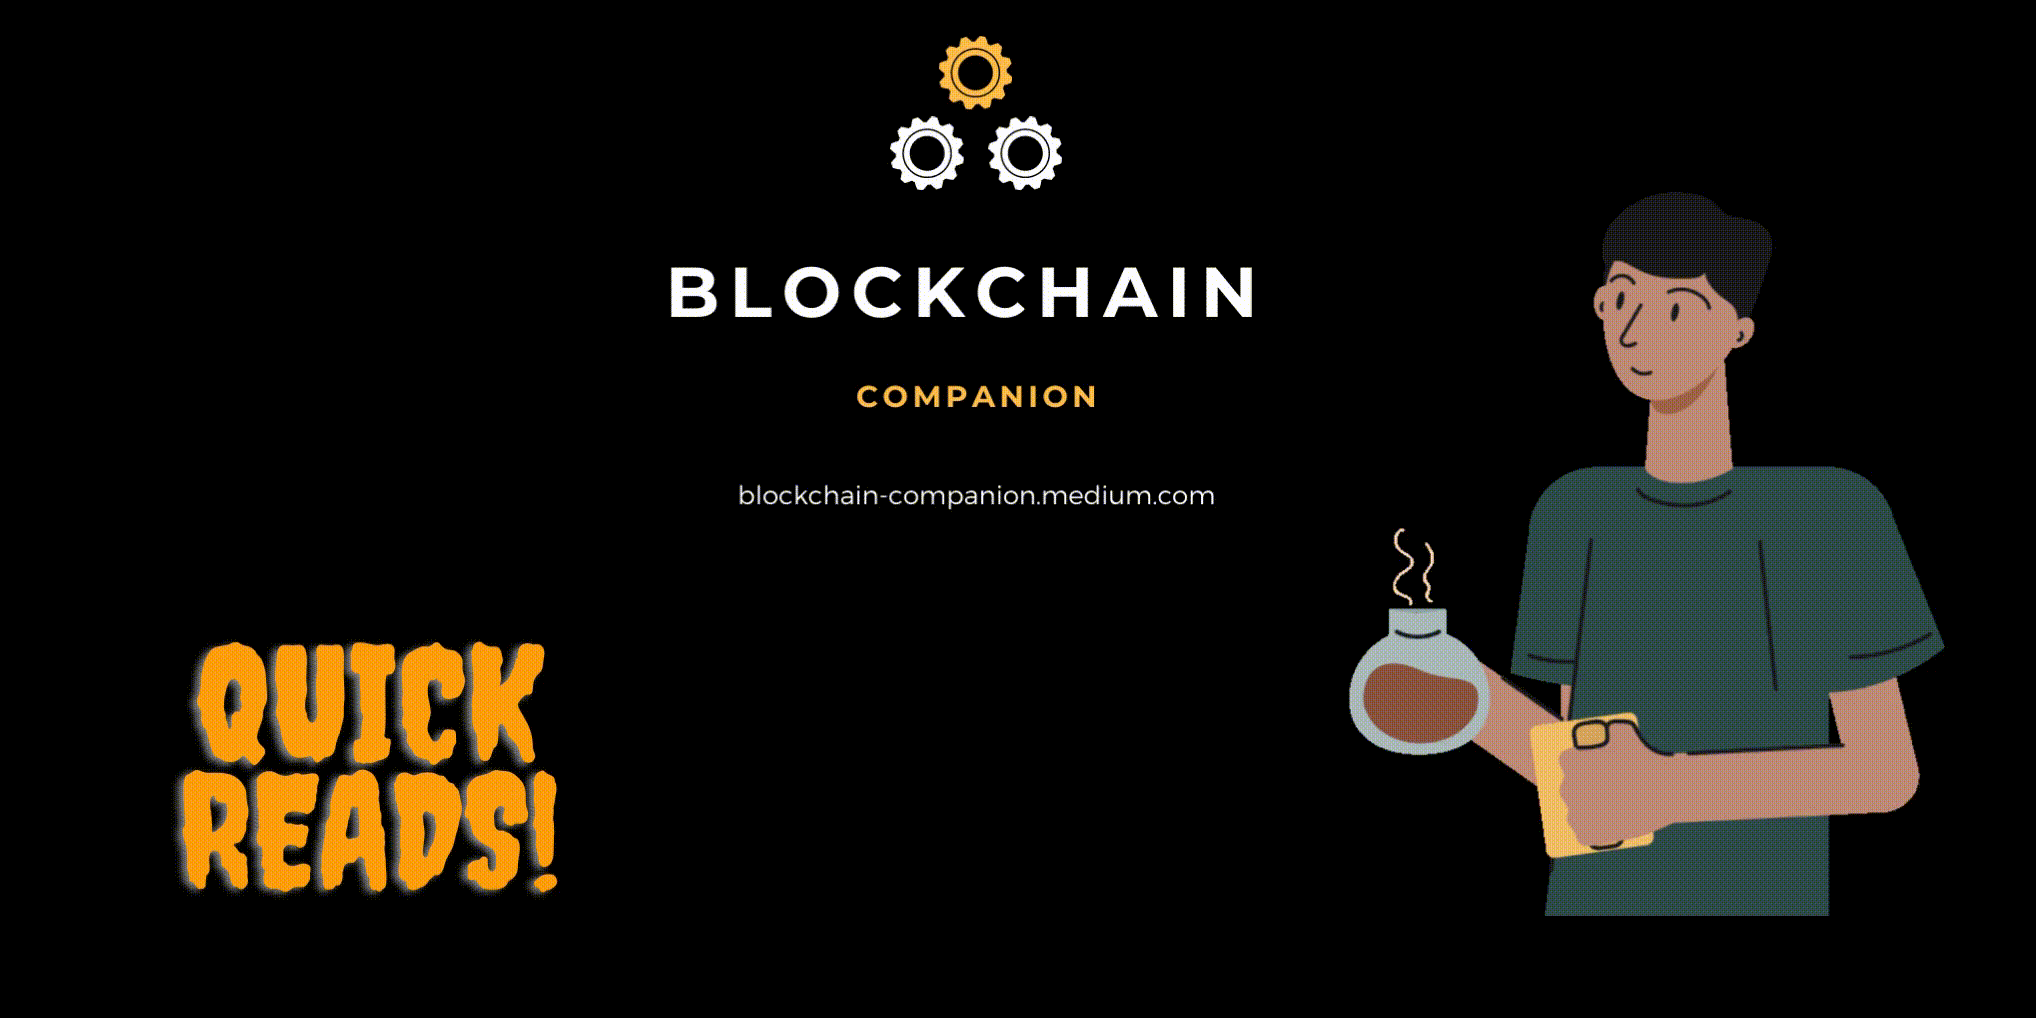 Blockchain Companion Quick Reads